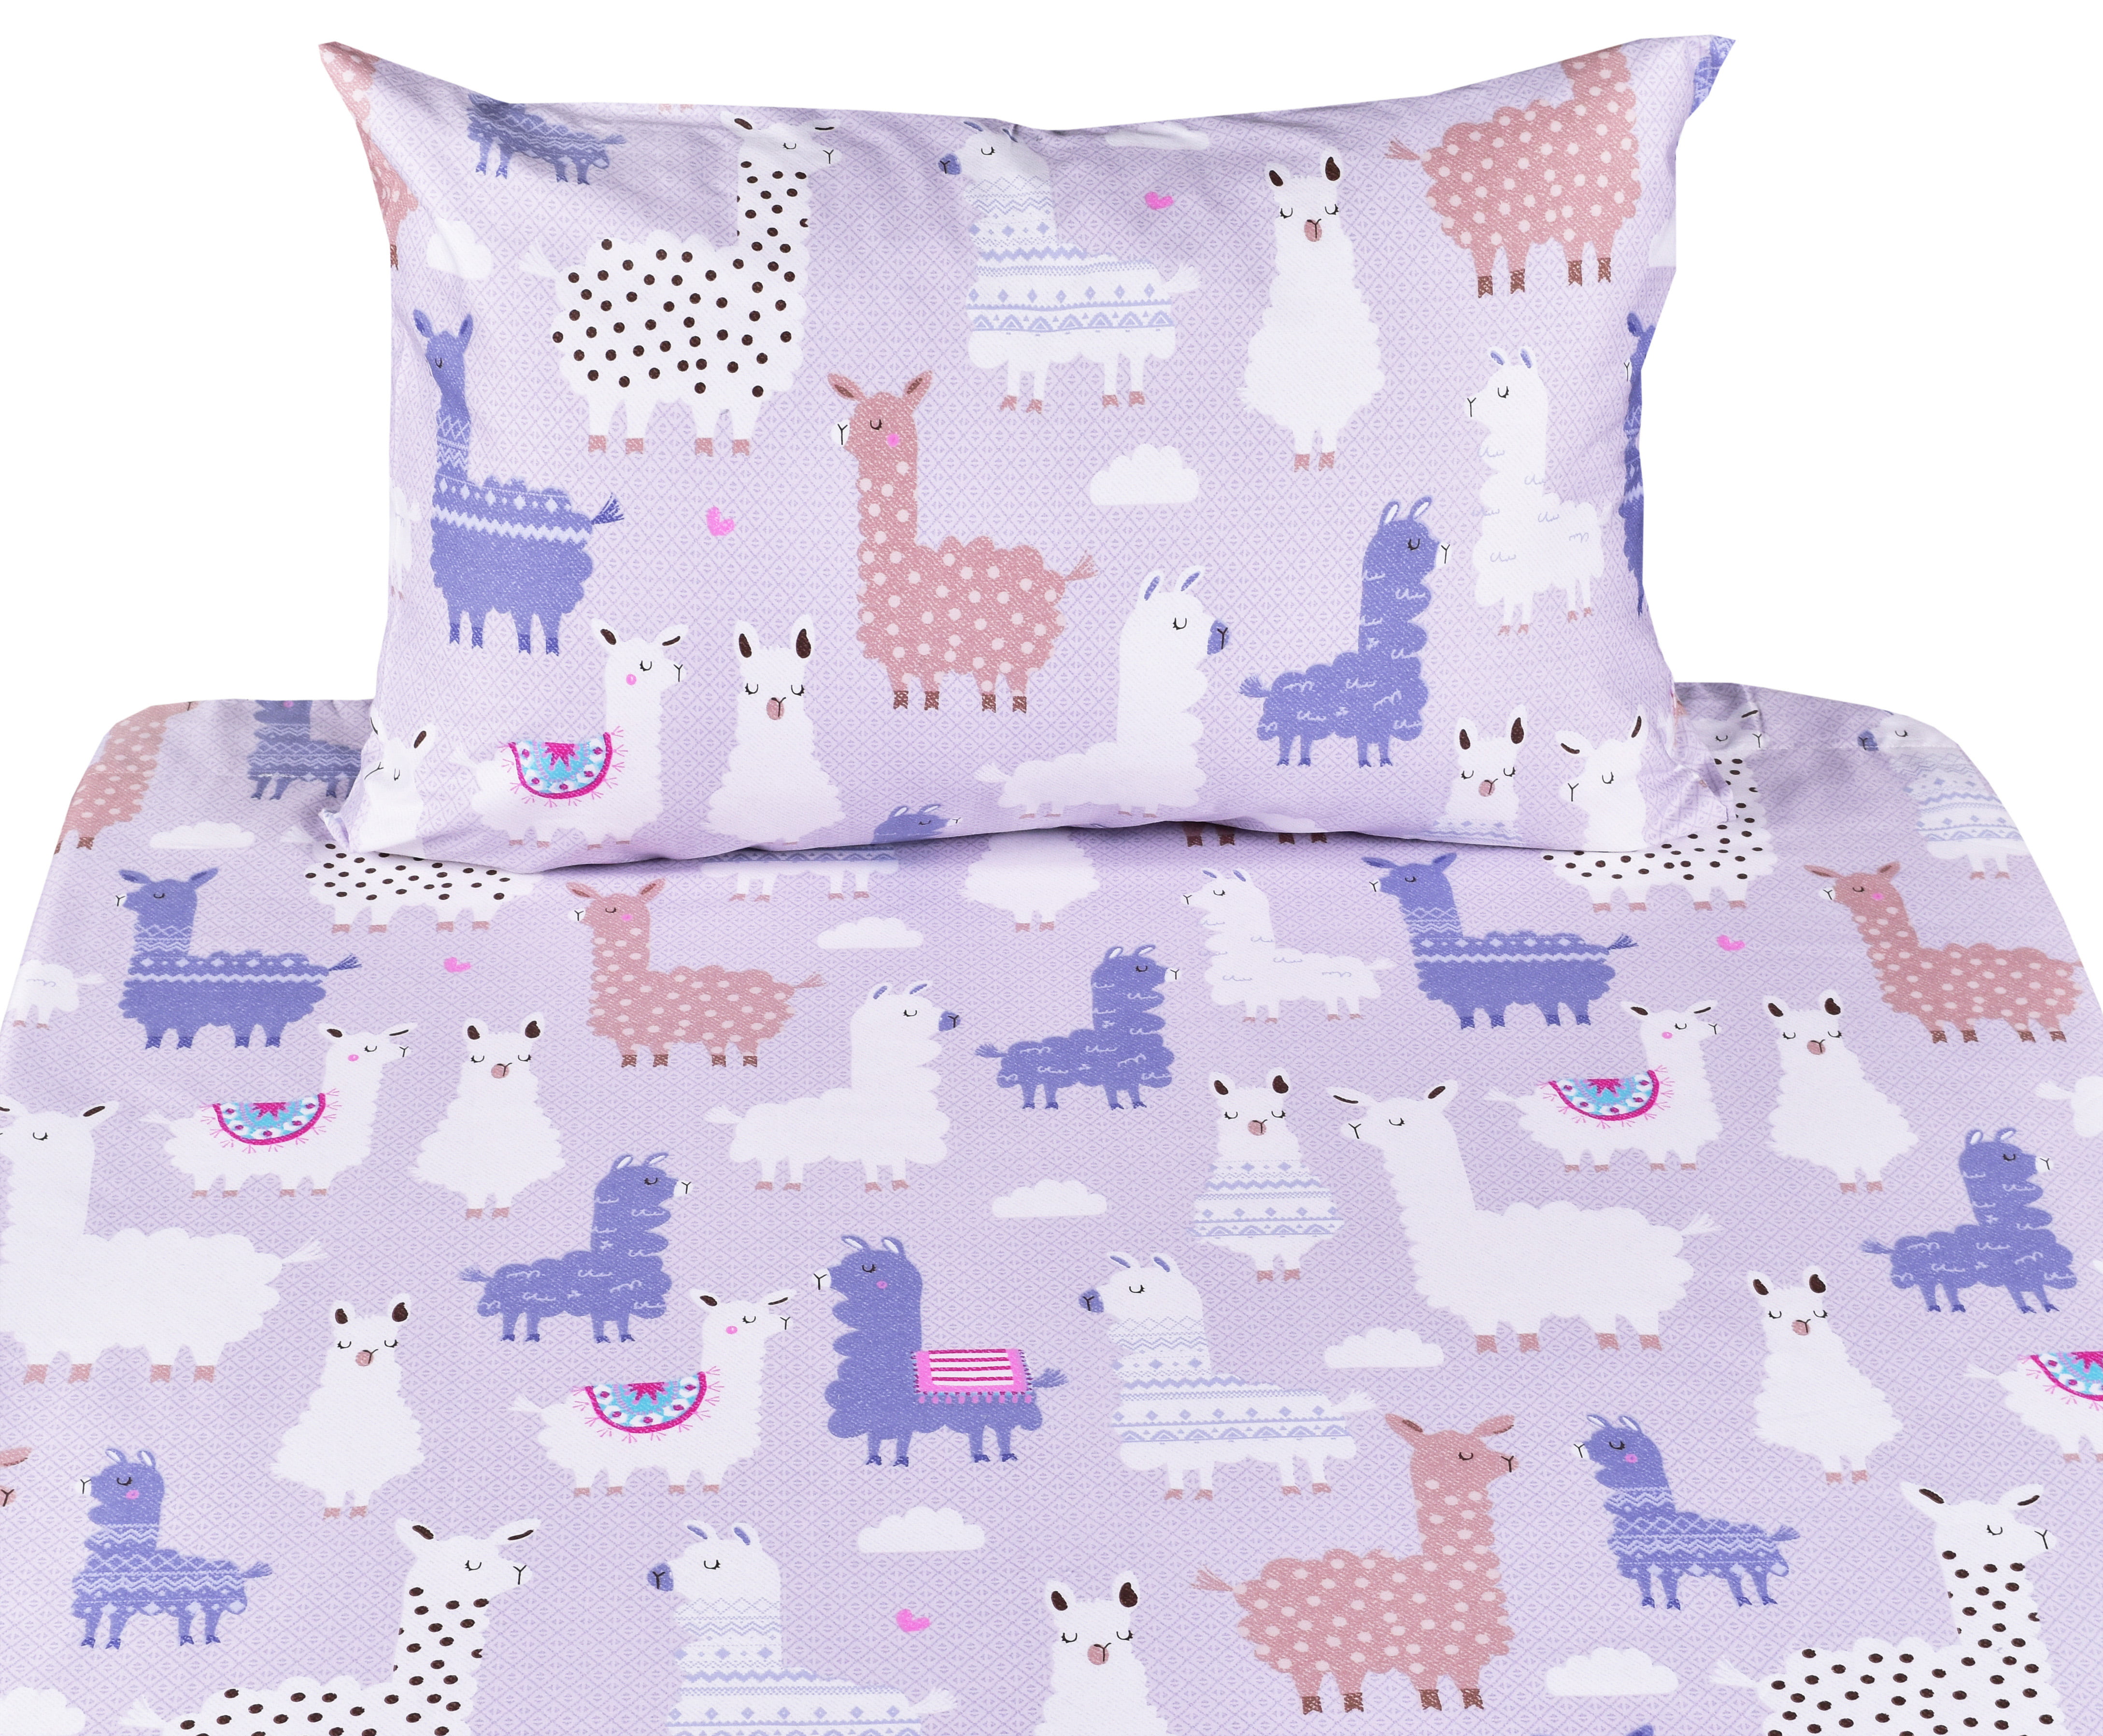 Flat Sheet Pillowcase Bedding Set Fitted Sheet J-pinno Chicken Little Bird Cute Twin Sheet Set for Kids Girl Children,100% Cotton 